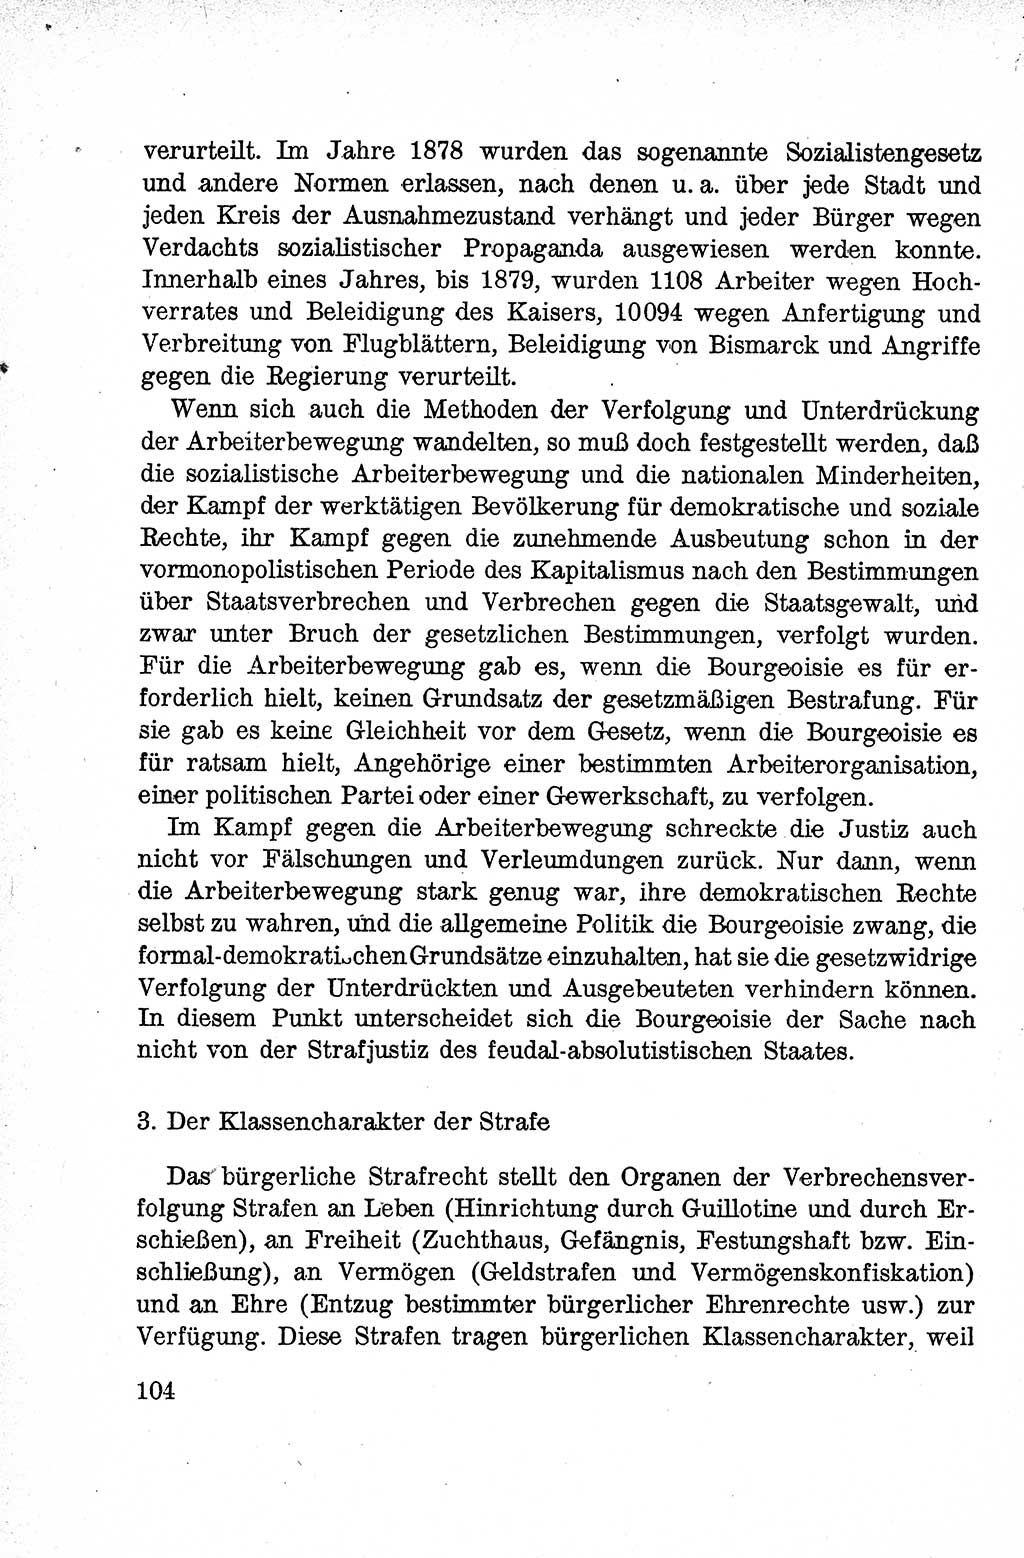 Lehrbuch des Strafrechts der Deutschen Demokratischen Republik (DDR), Allgemeiner Teil 1959, Seite 104 (Lb. Strafr. DDR AT 1959, S. 104)